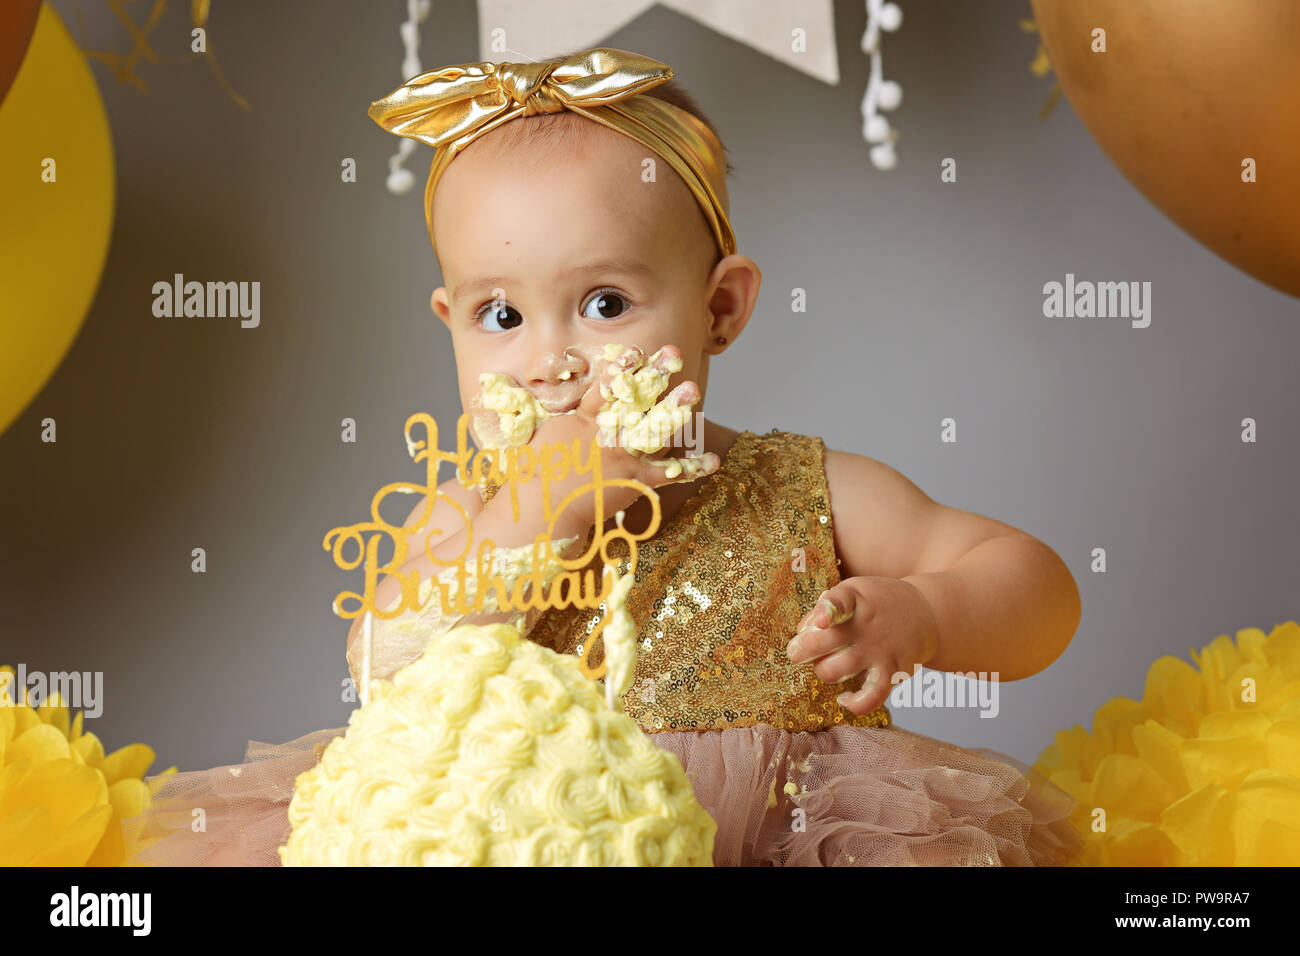 Cute little girl eating cake Stock Photo